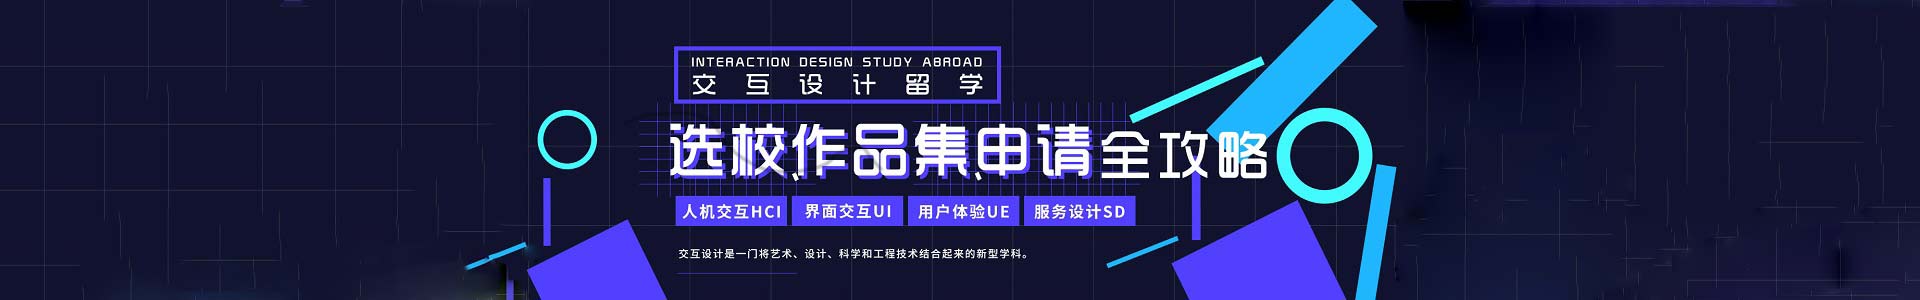 上海交互設計藝術留學作品集培訓機構